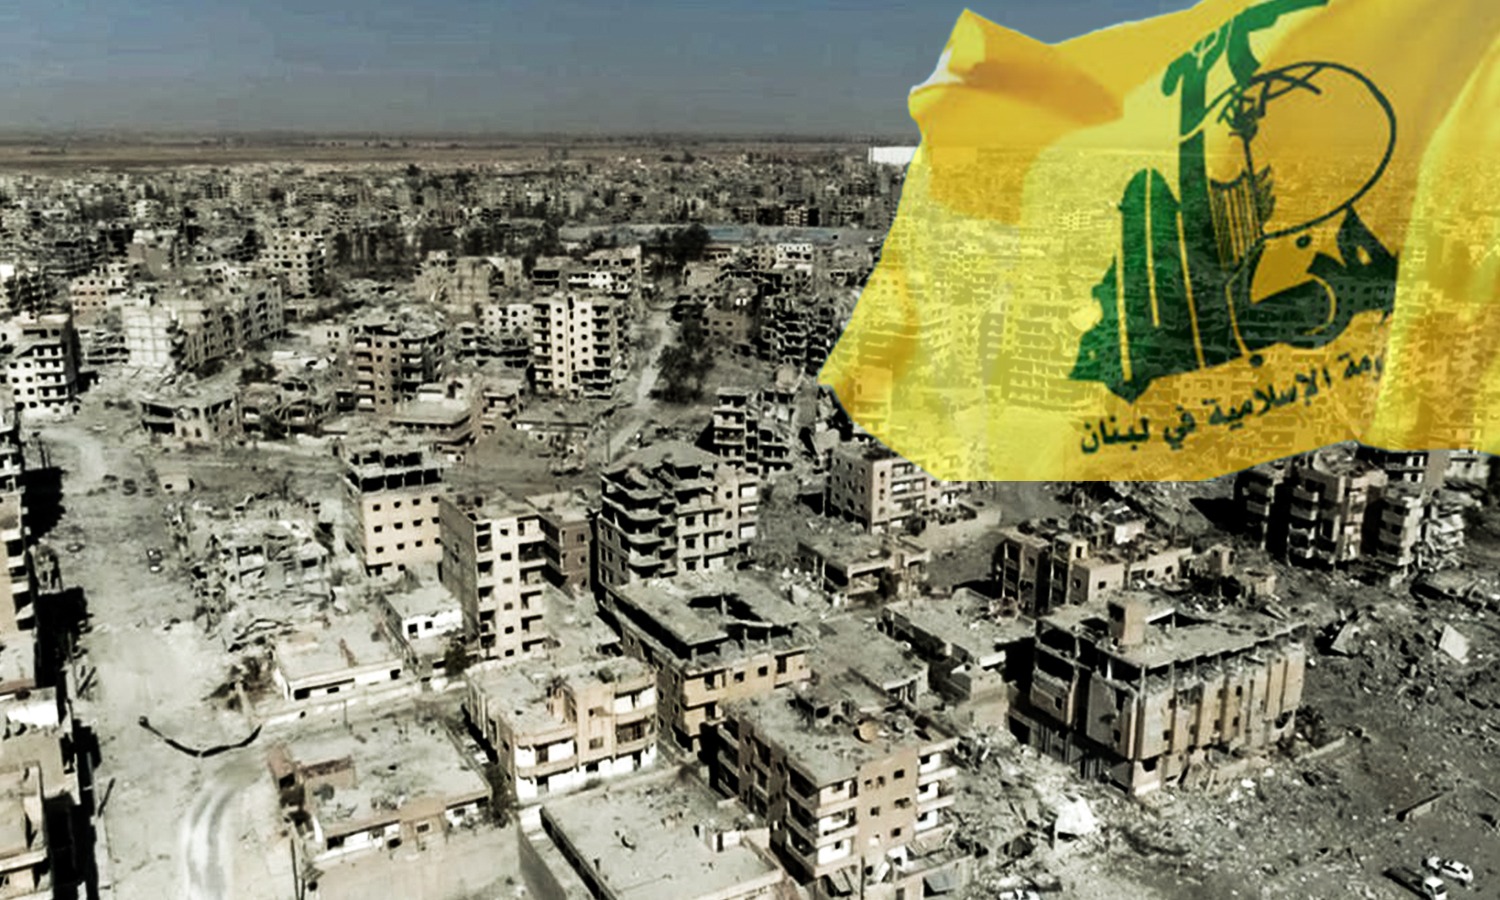 مدينة القصير بريف حمص الغربي في ظل هيمنة "حزب الله" اللبناني، تعديل عنب بلدي، 2020